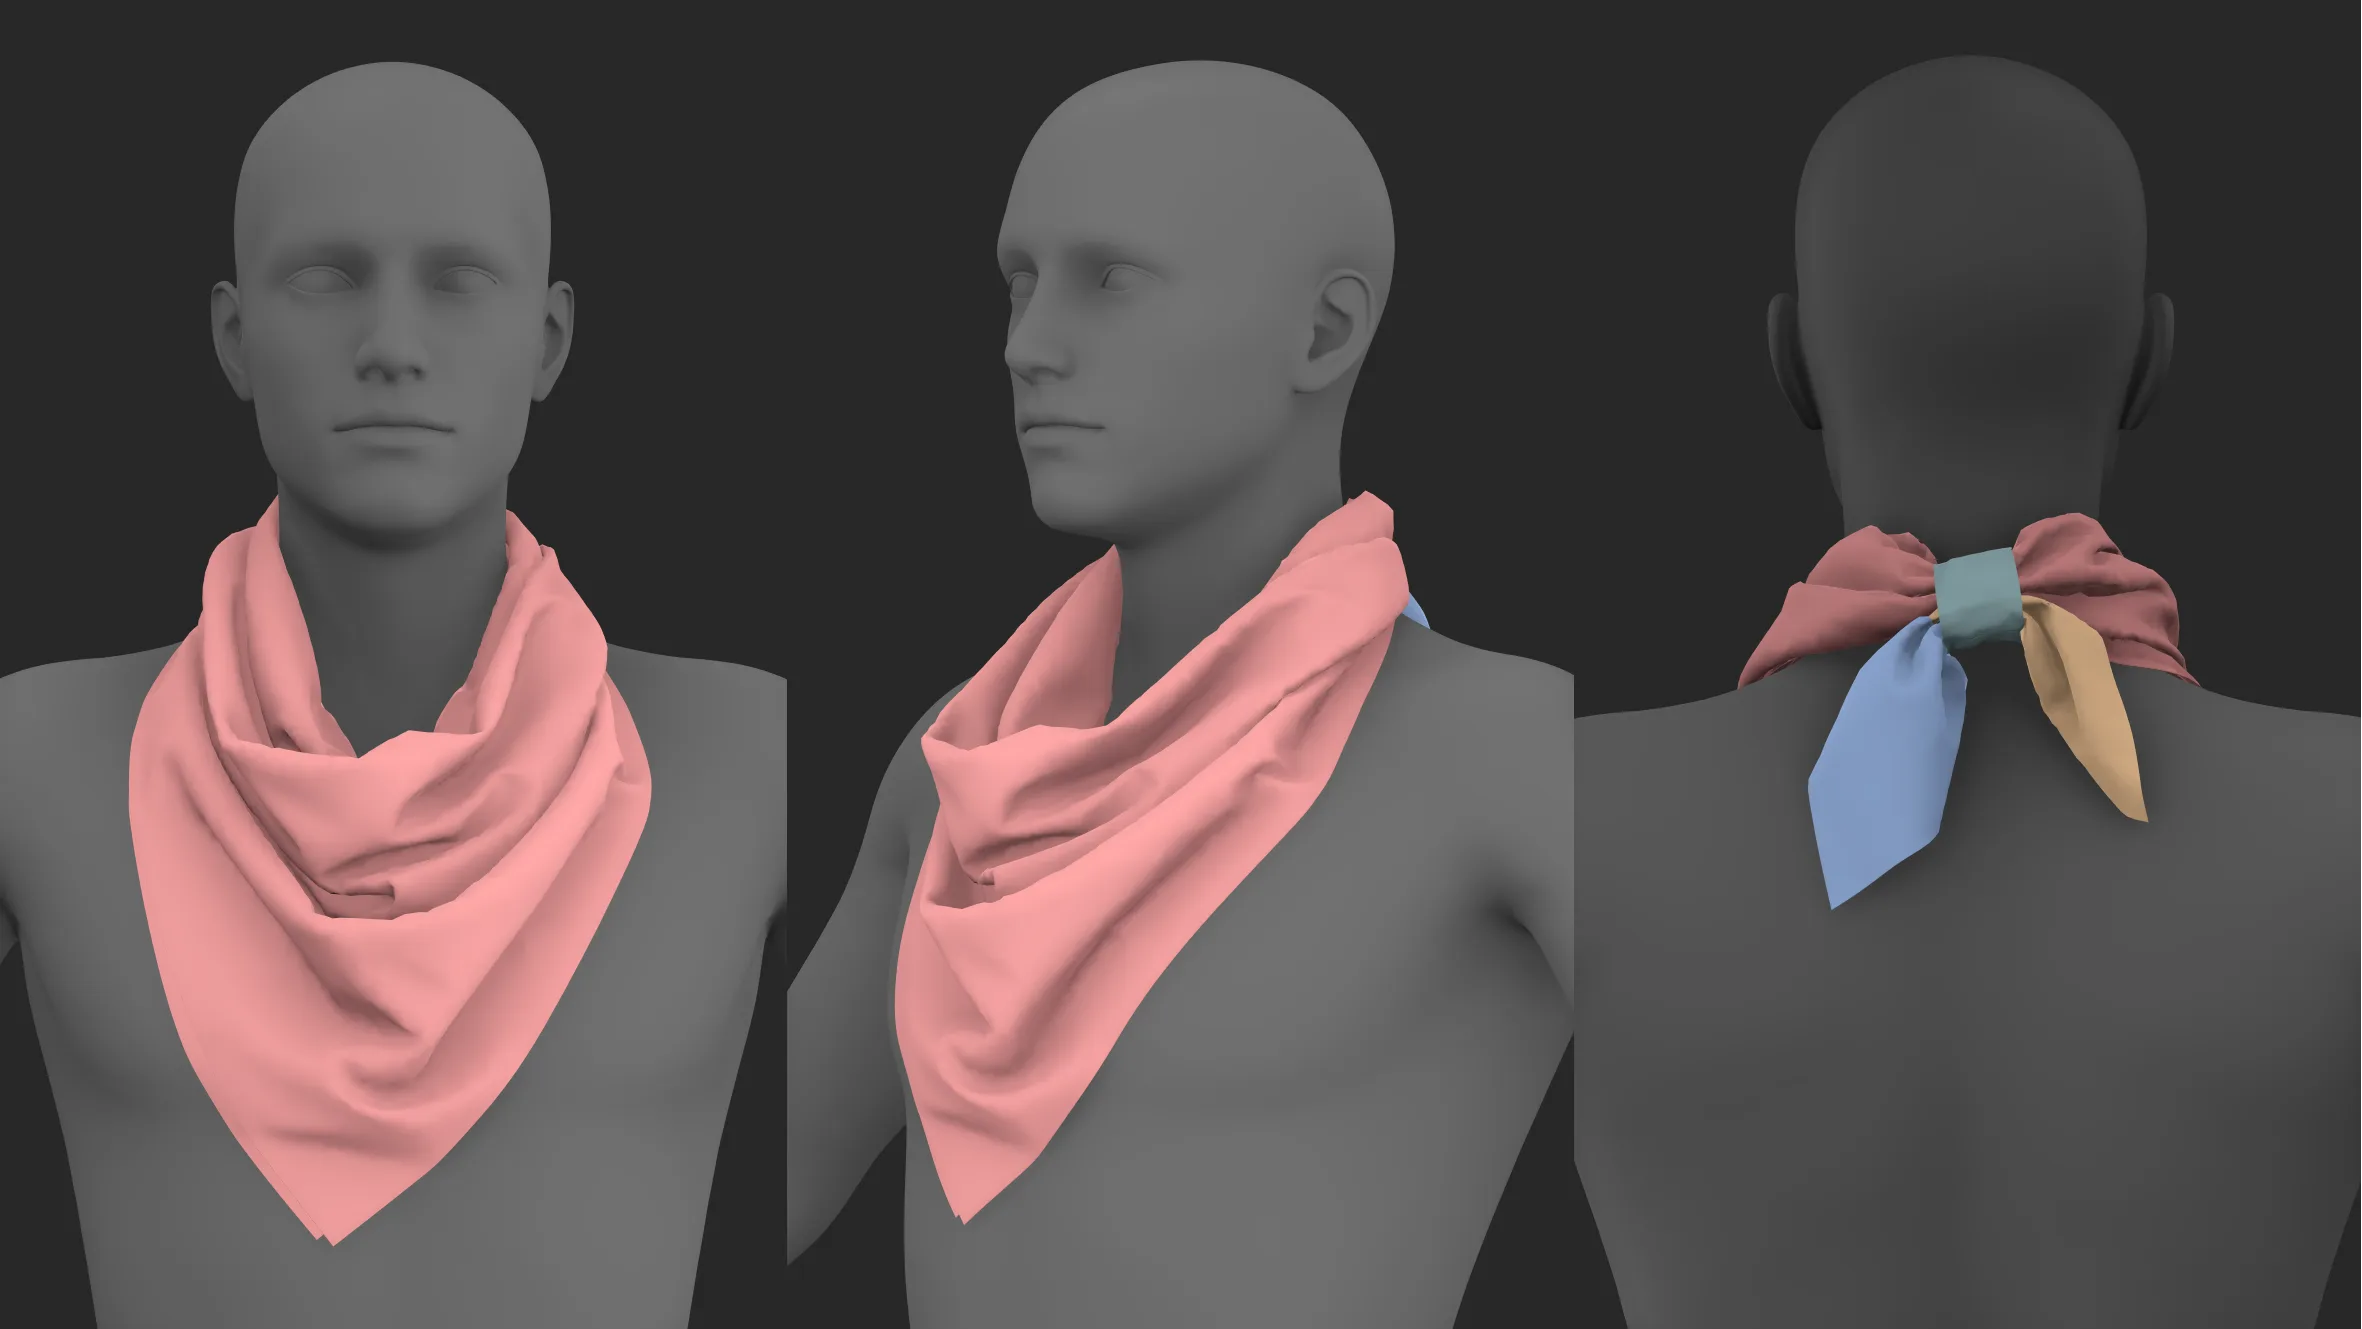 Basic scarves pack. Marvelous / CLO 3D / zprj obj fbx